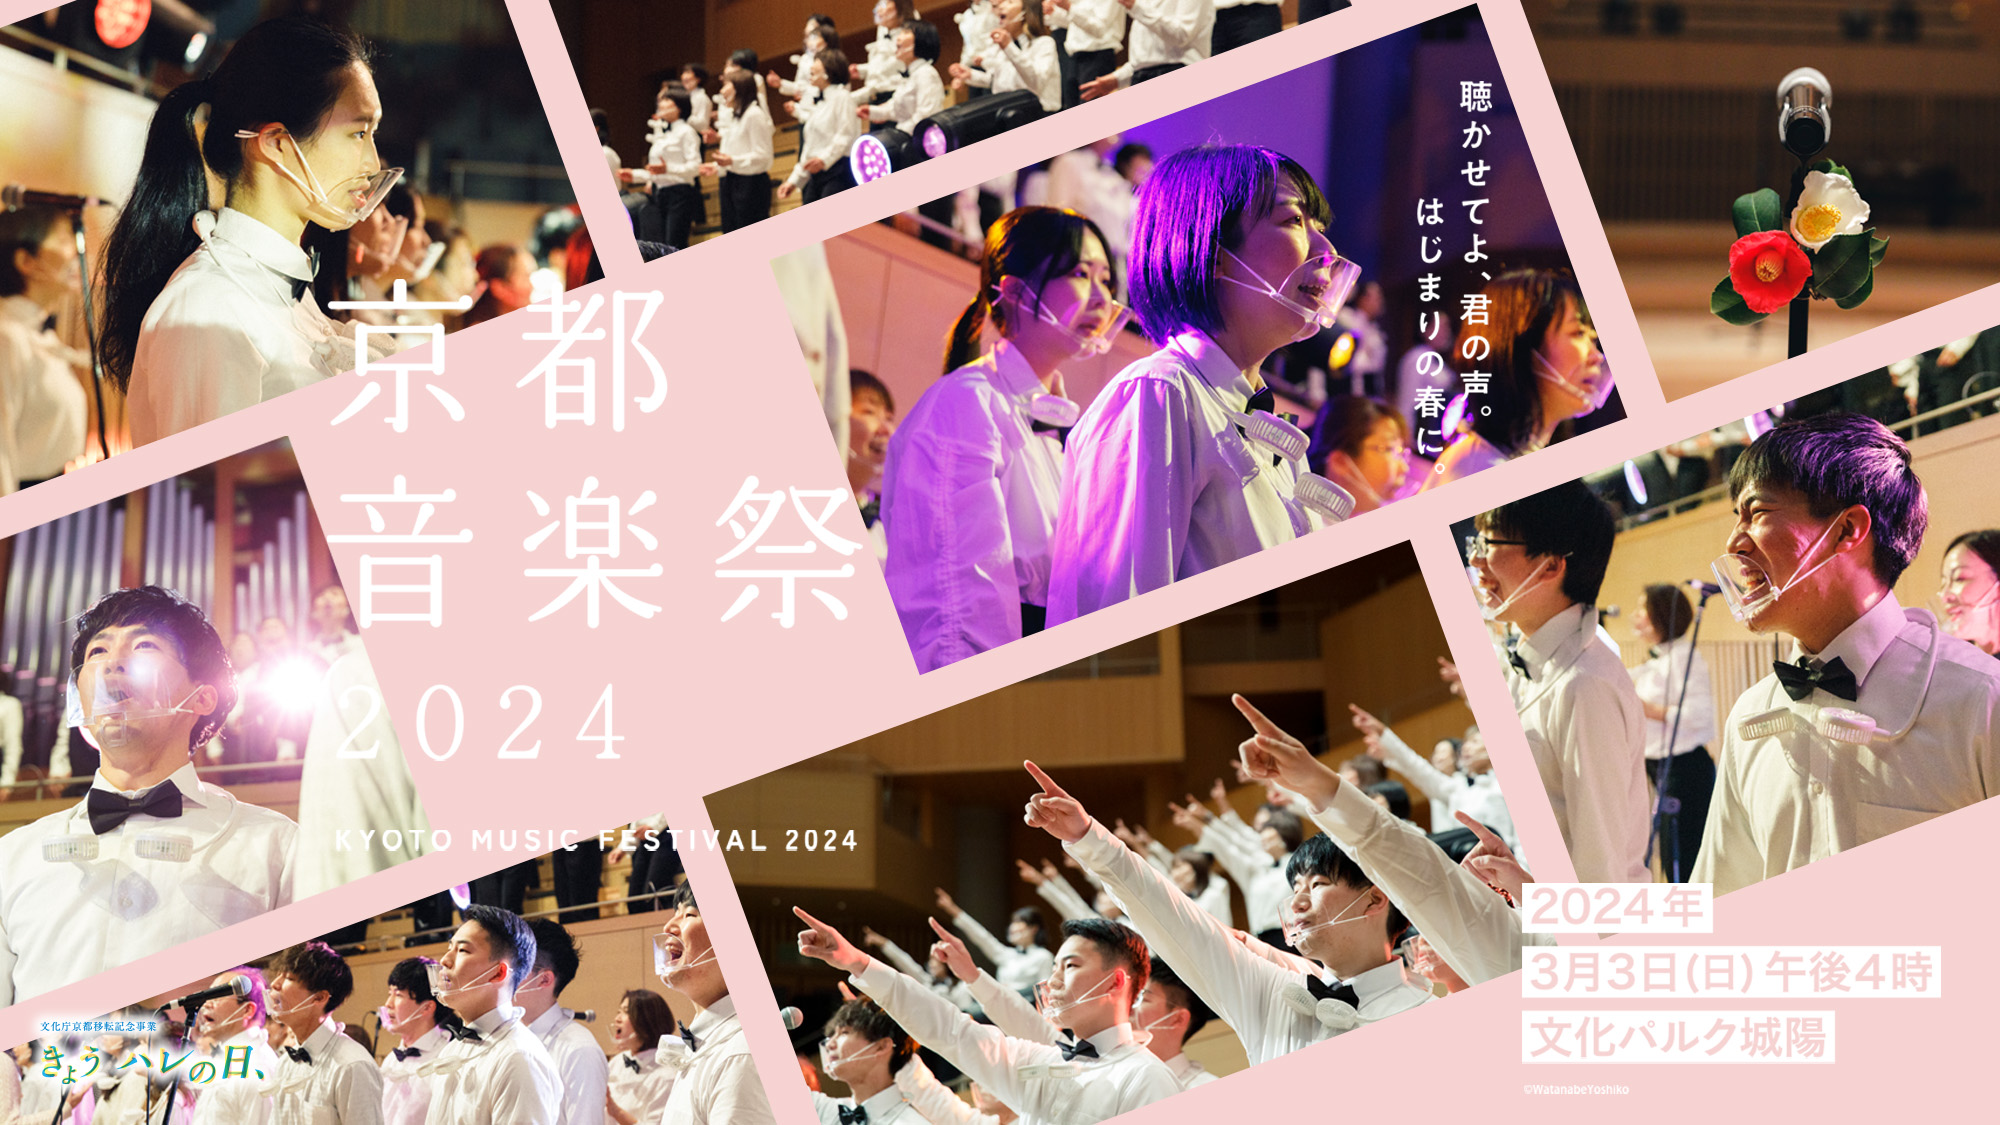 文化庁京都移転記念事業 京都音楽祭 府民とつくるミュージックフェスティバル